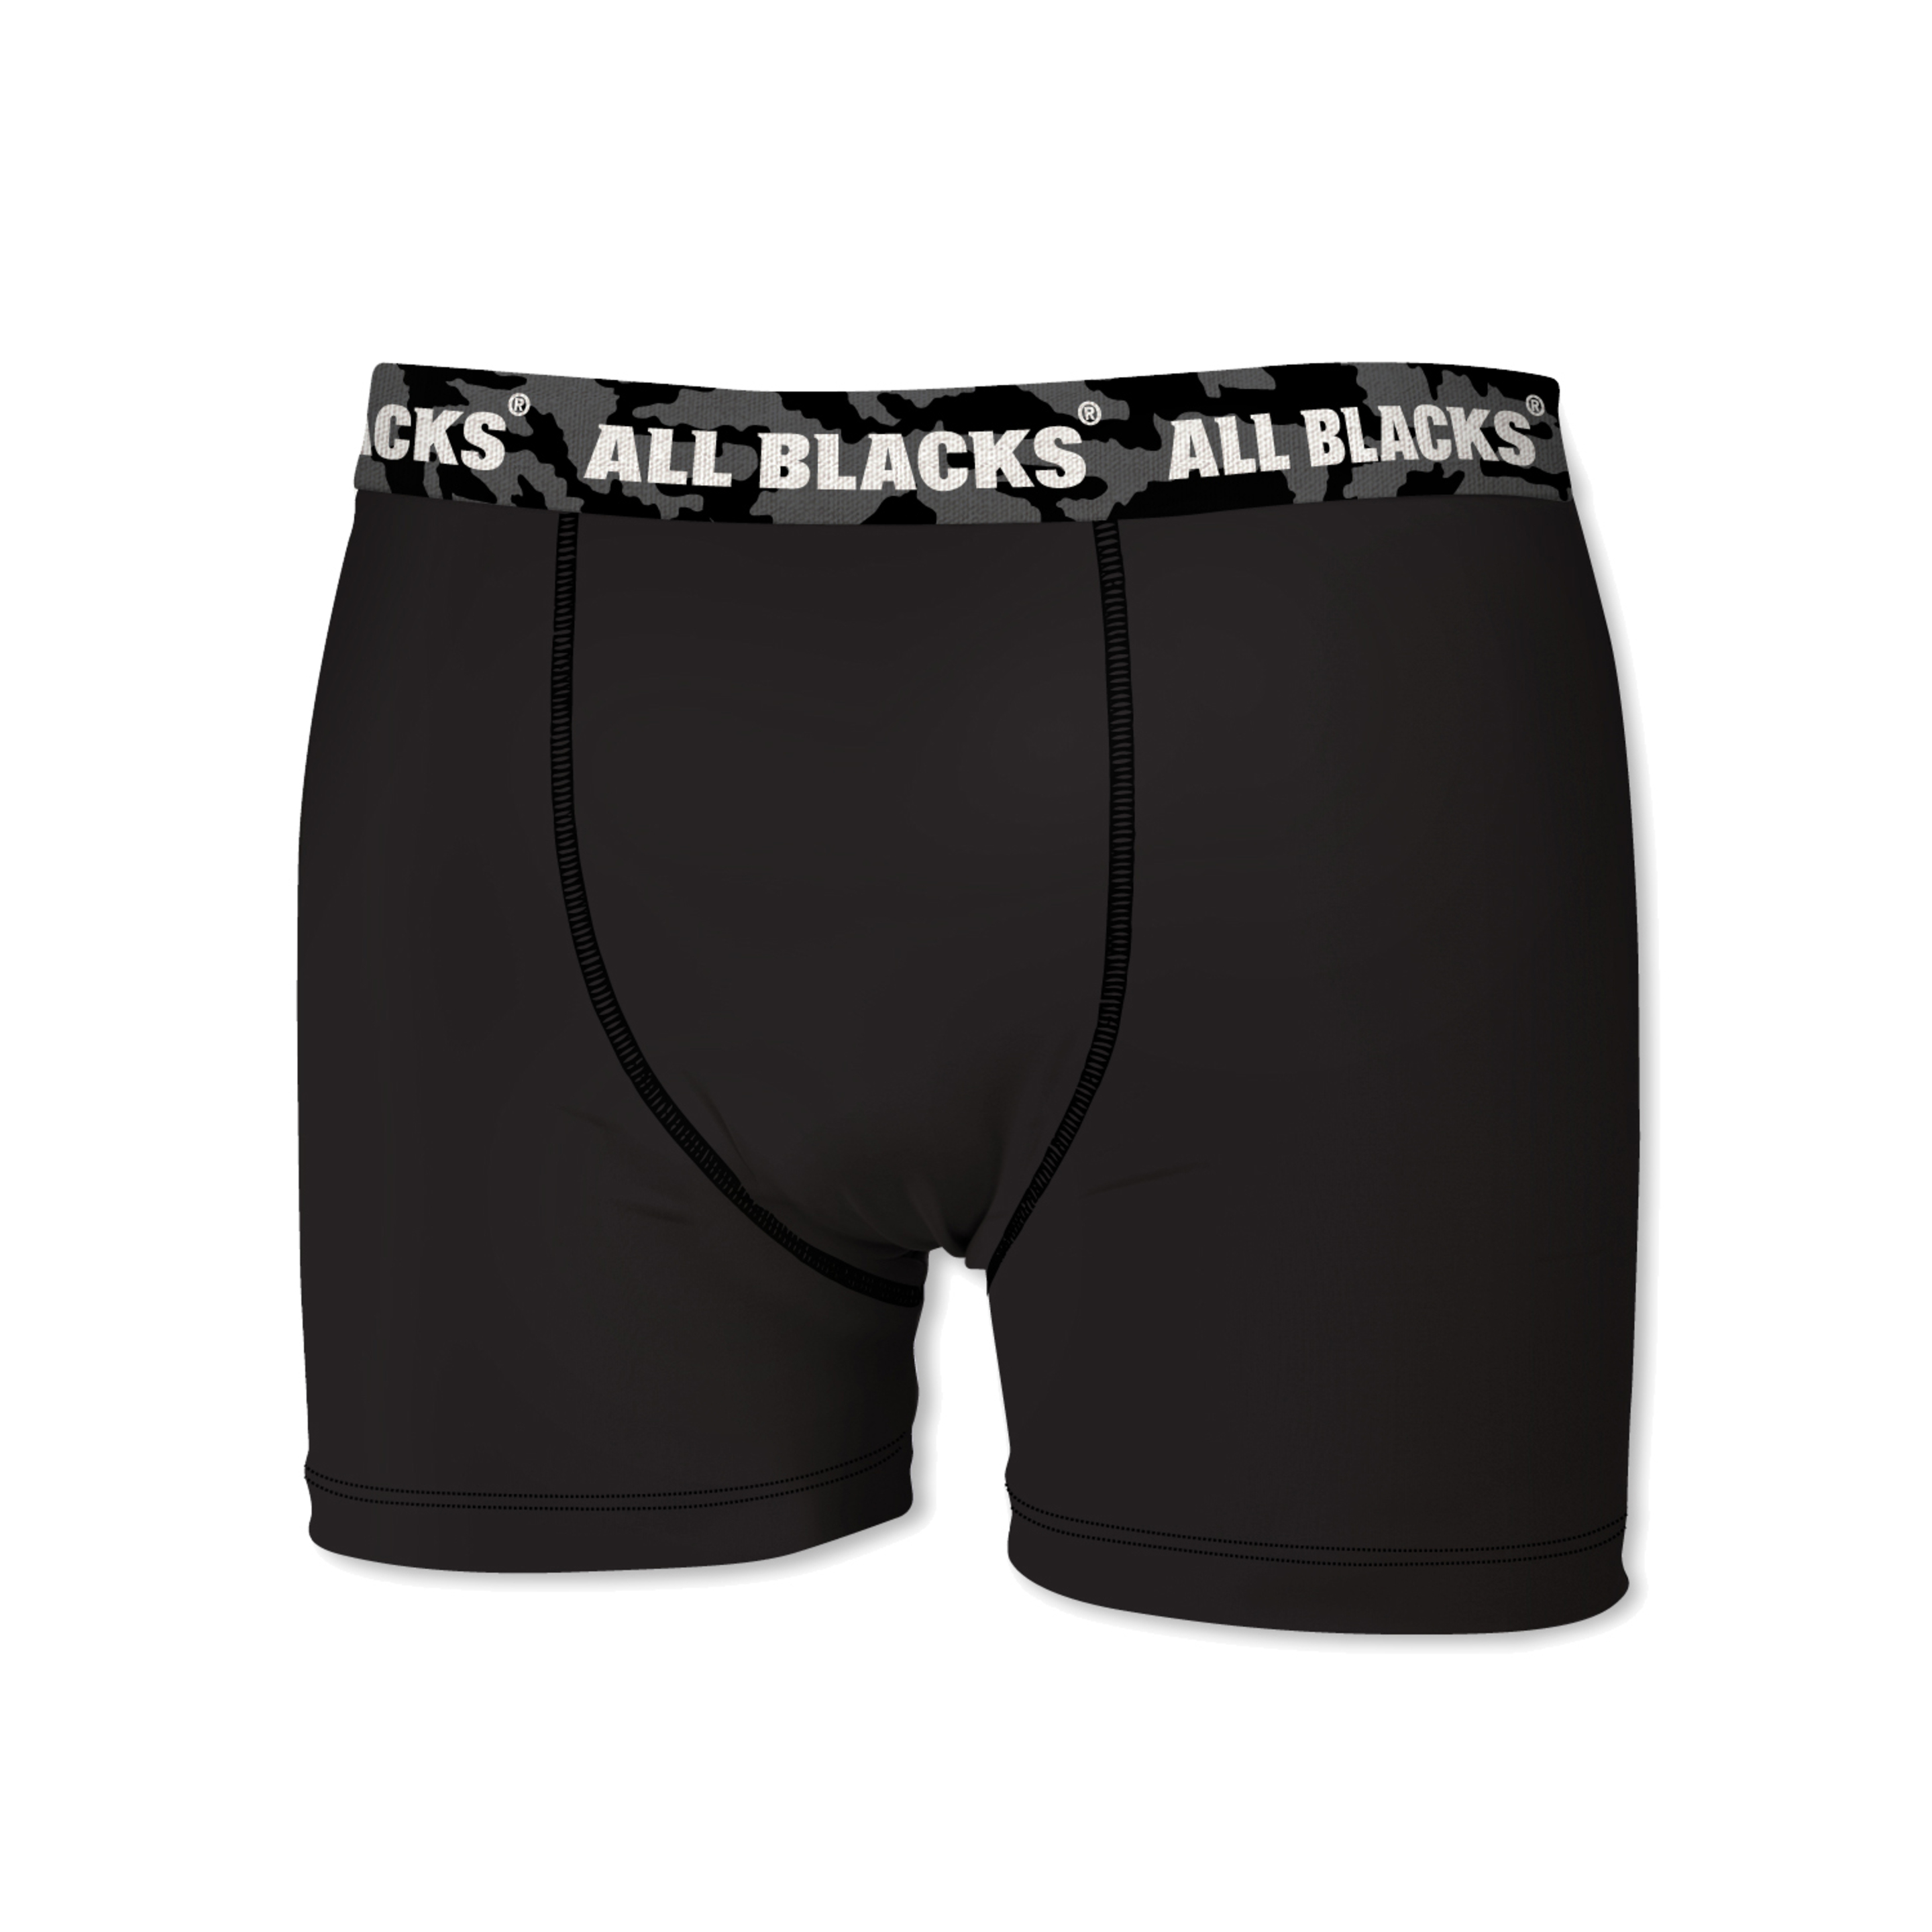 Cuecas All Blacks - negro - 